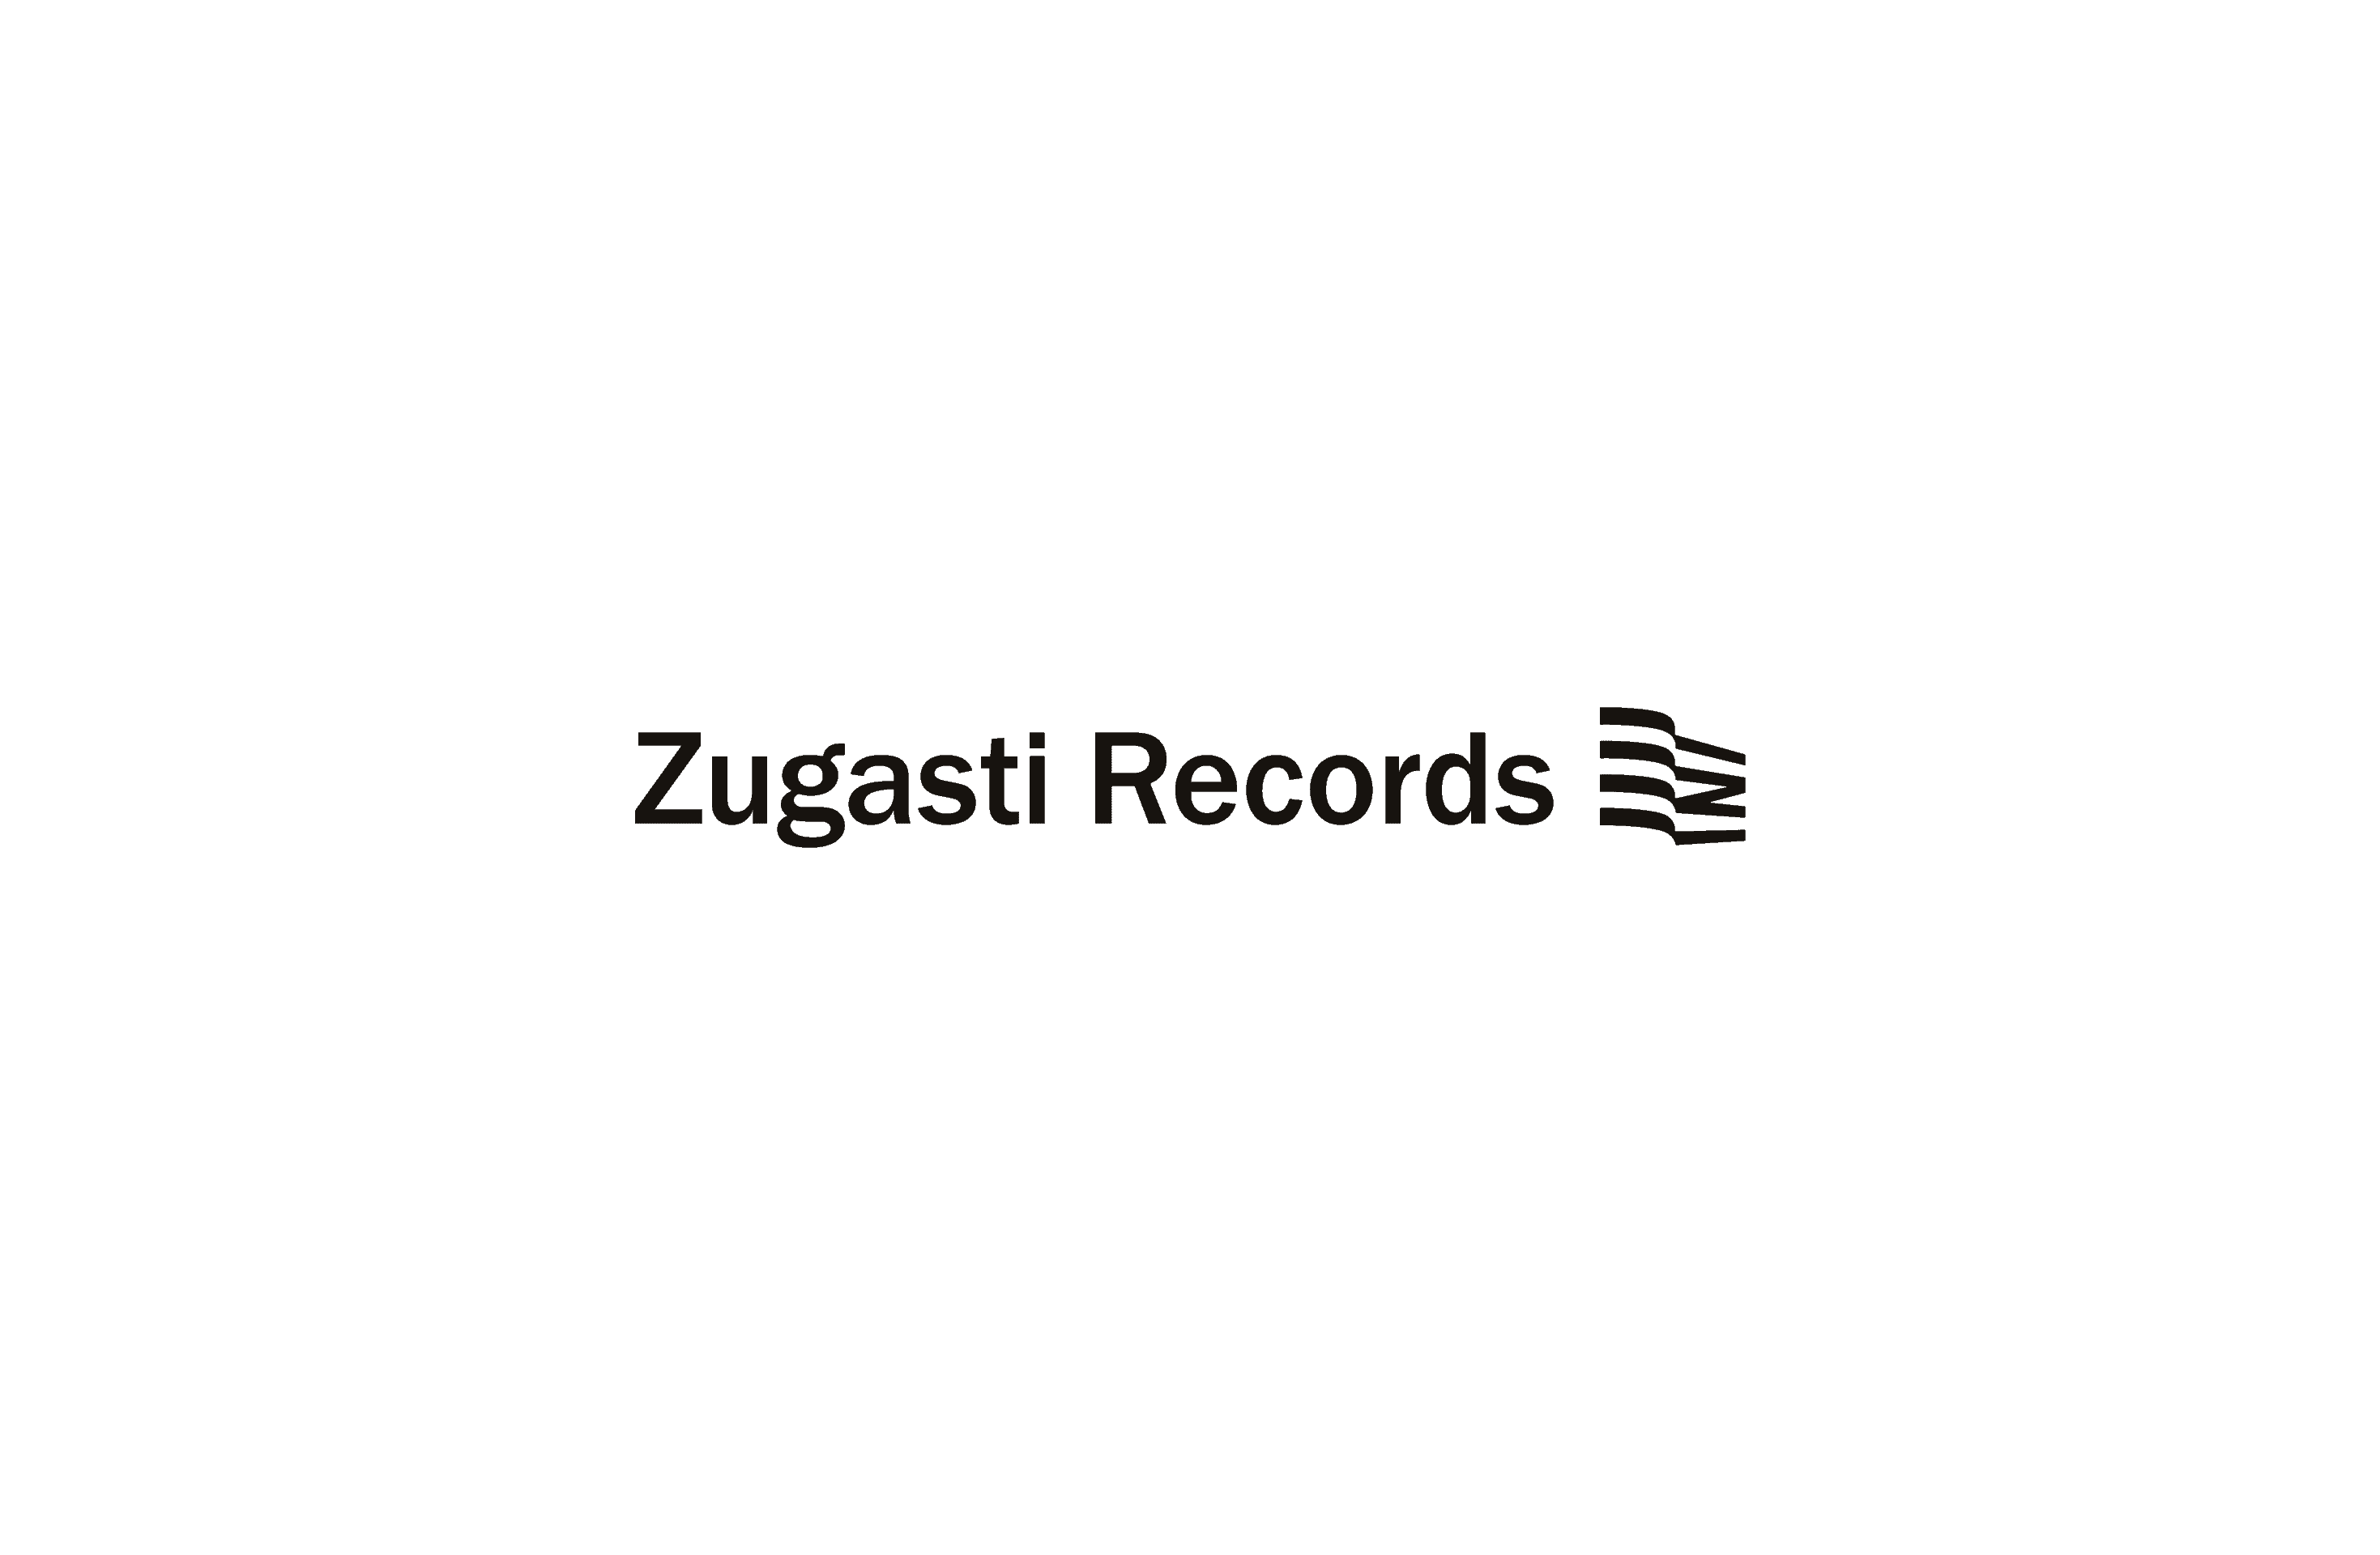 Zugasti Records